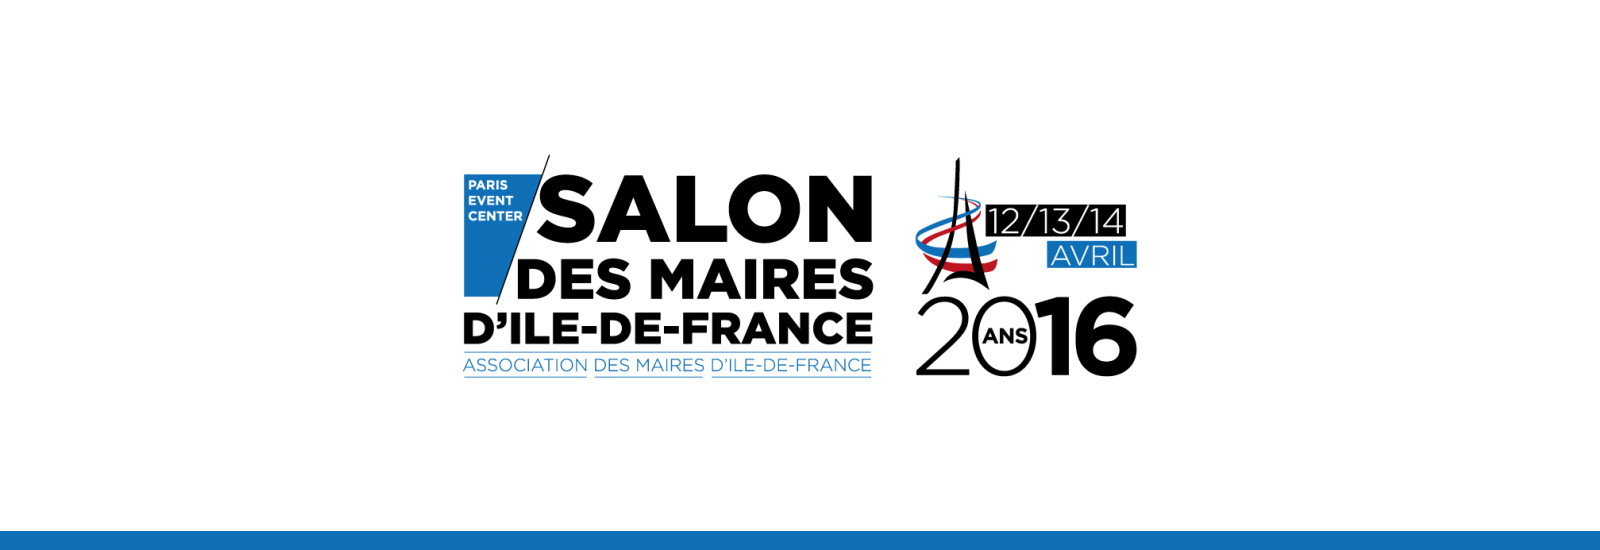 Au Salon des Maires d’Ile de France (AMIF), Design-R renforce sa présence avec 3 stands.